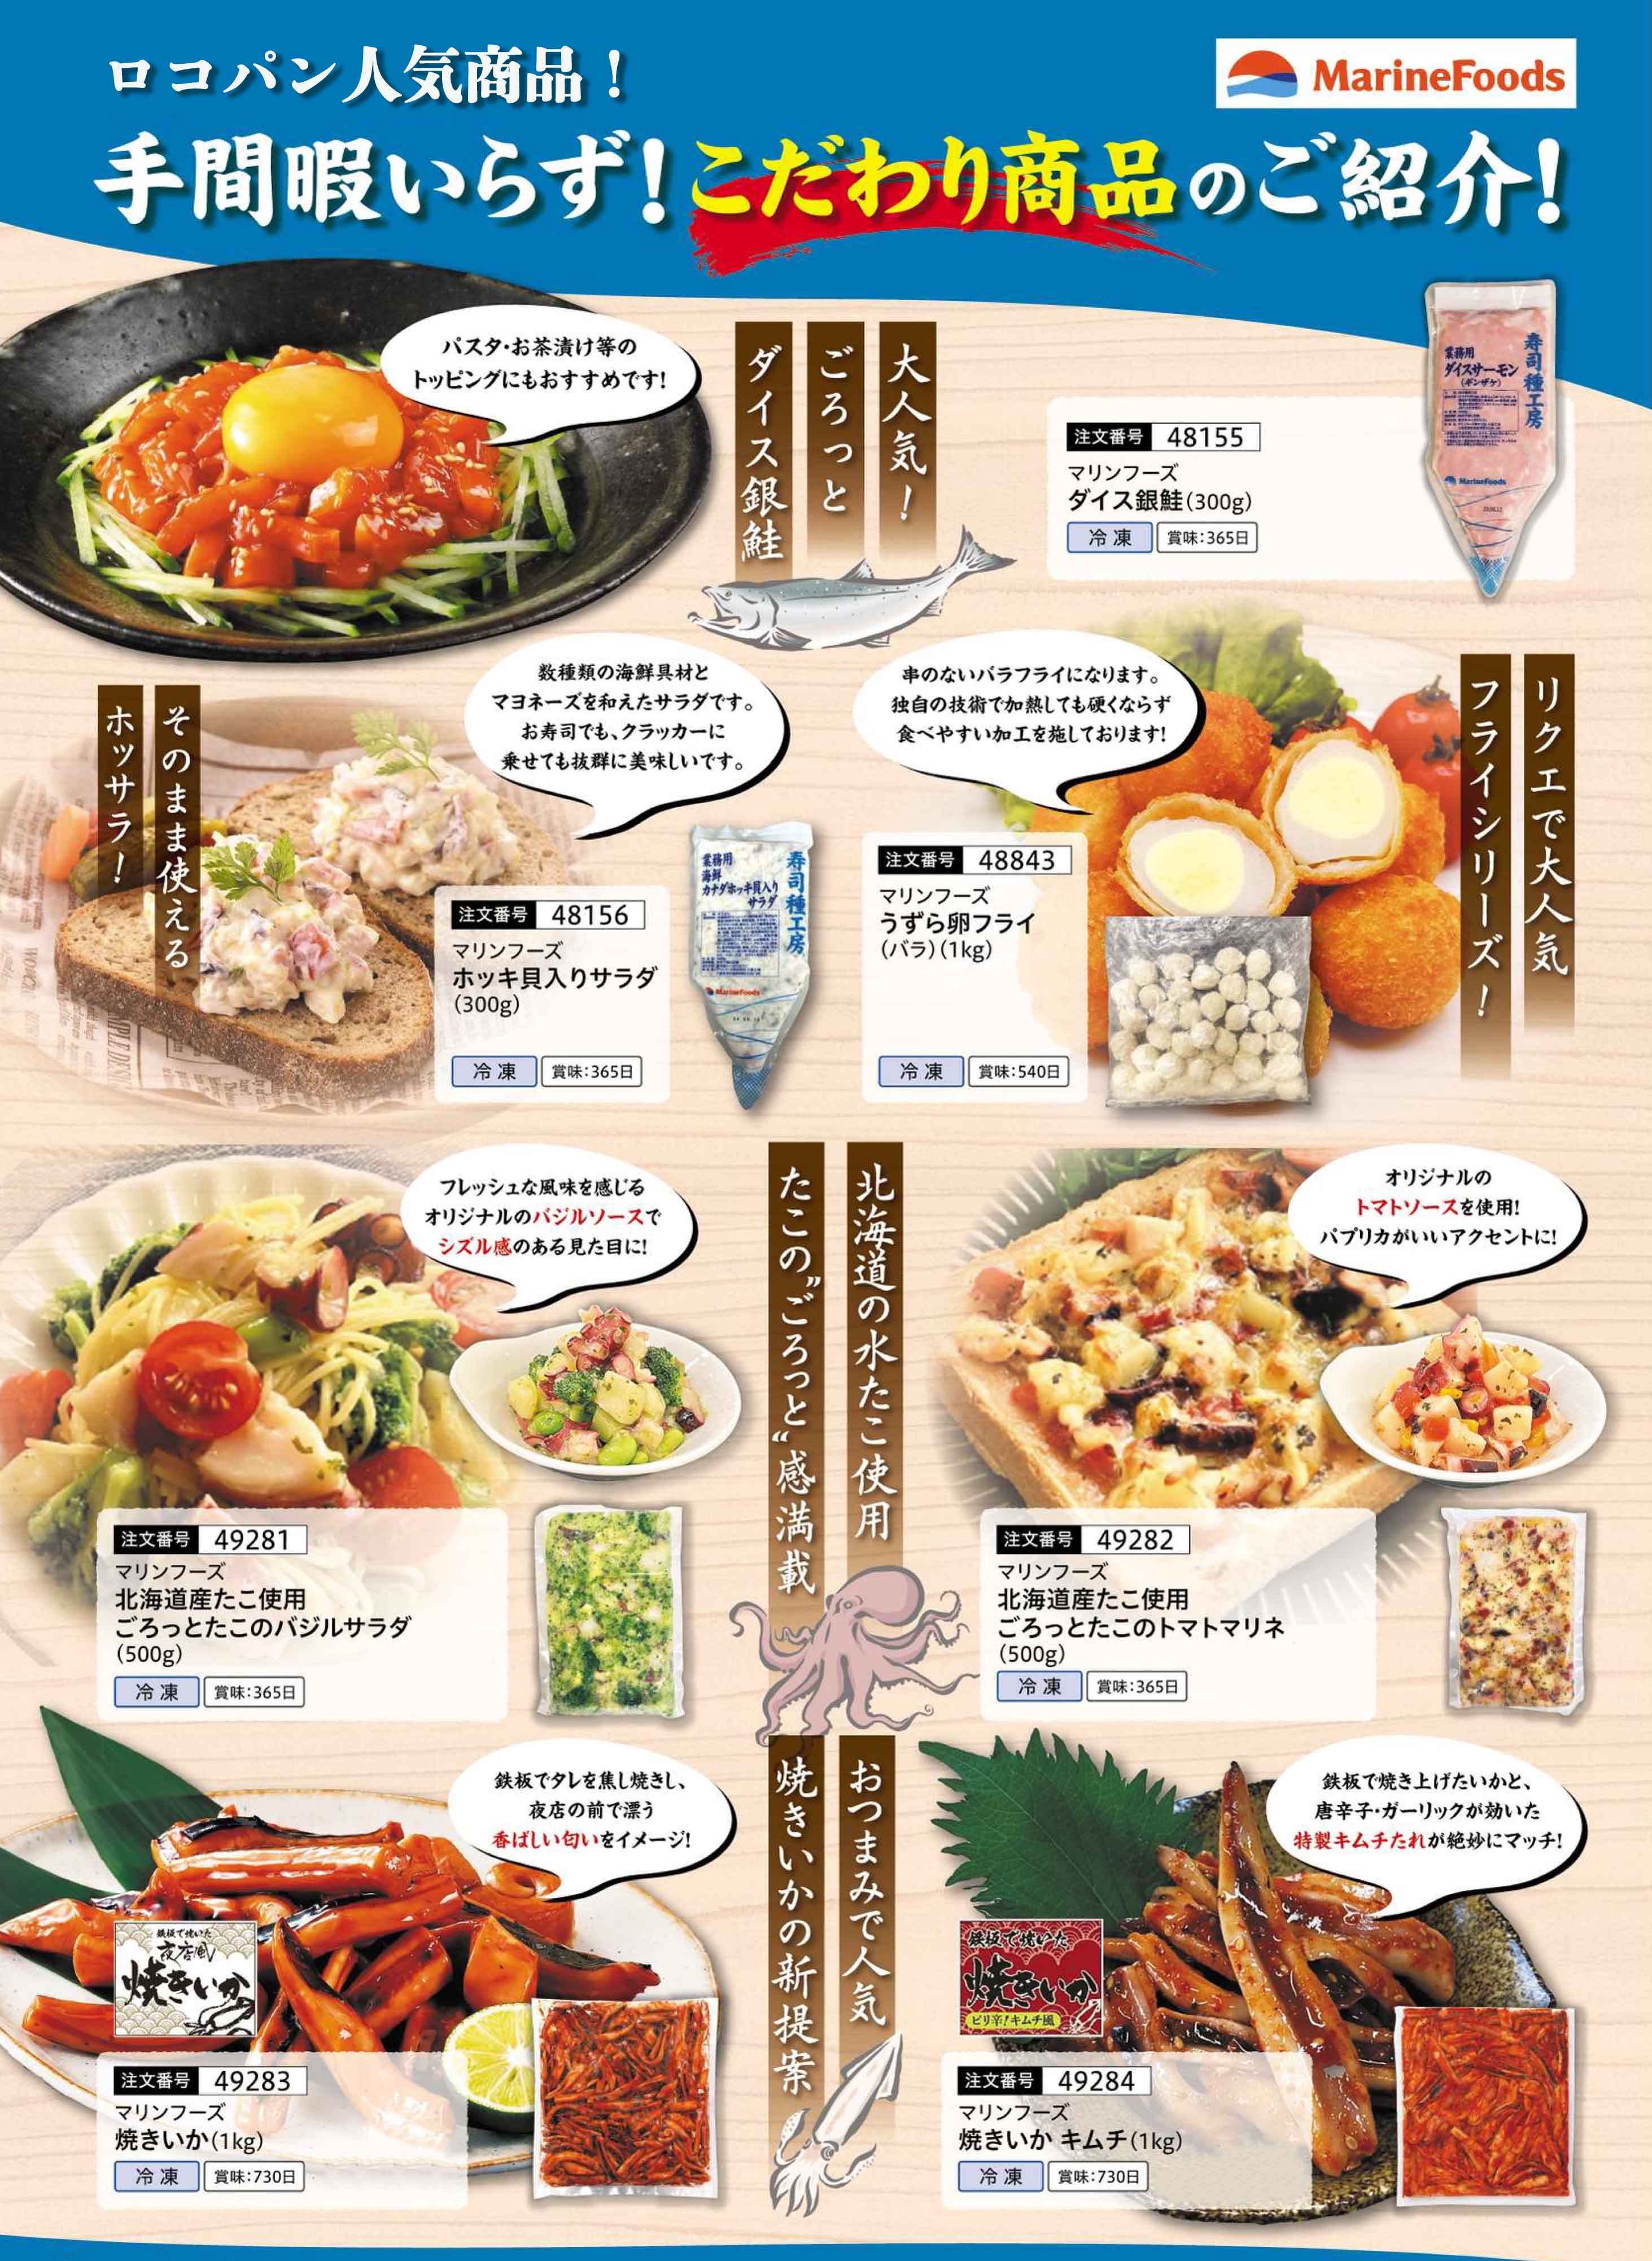 yƖpzyԁzMarine Foods